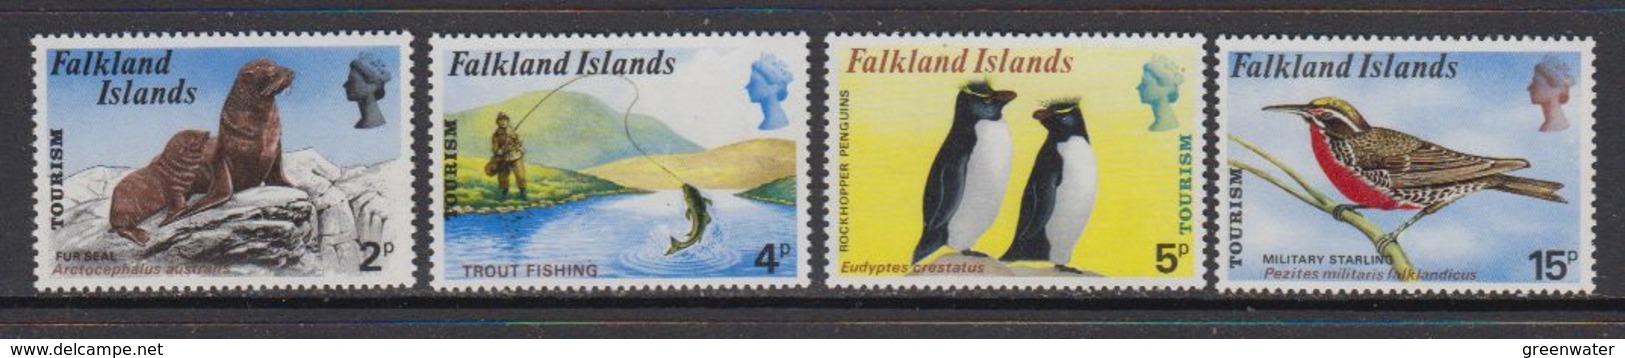 Falkland Islands 1974 Tourism 4v ** Mnh (41748) - Falkland